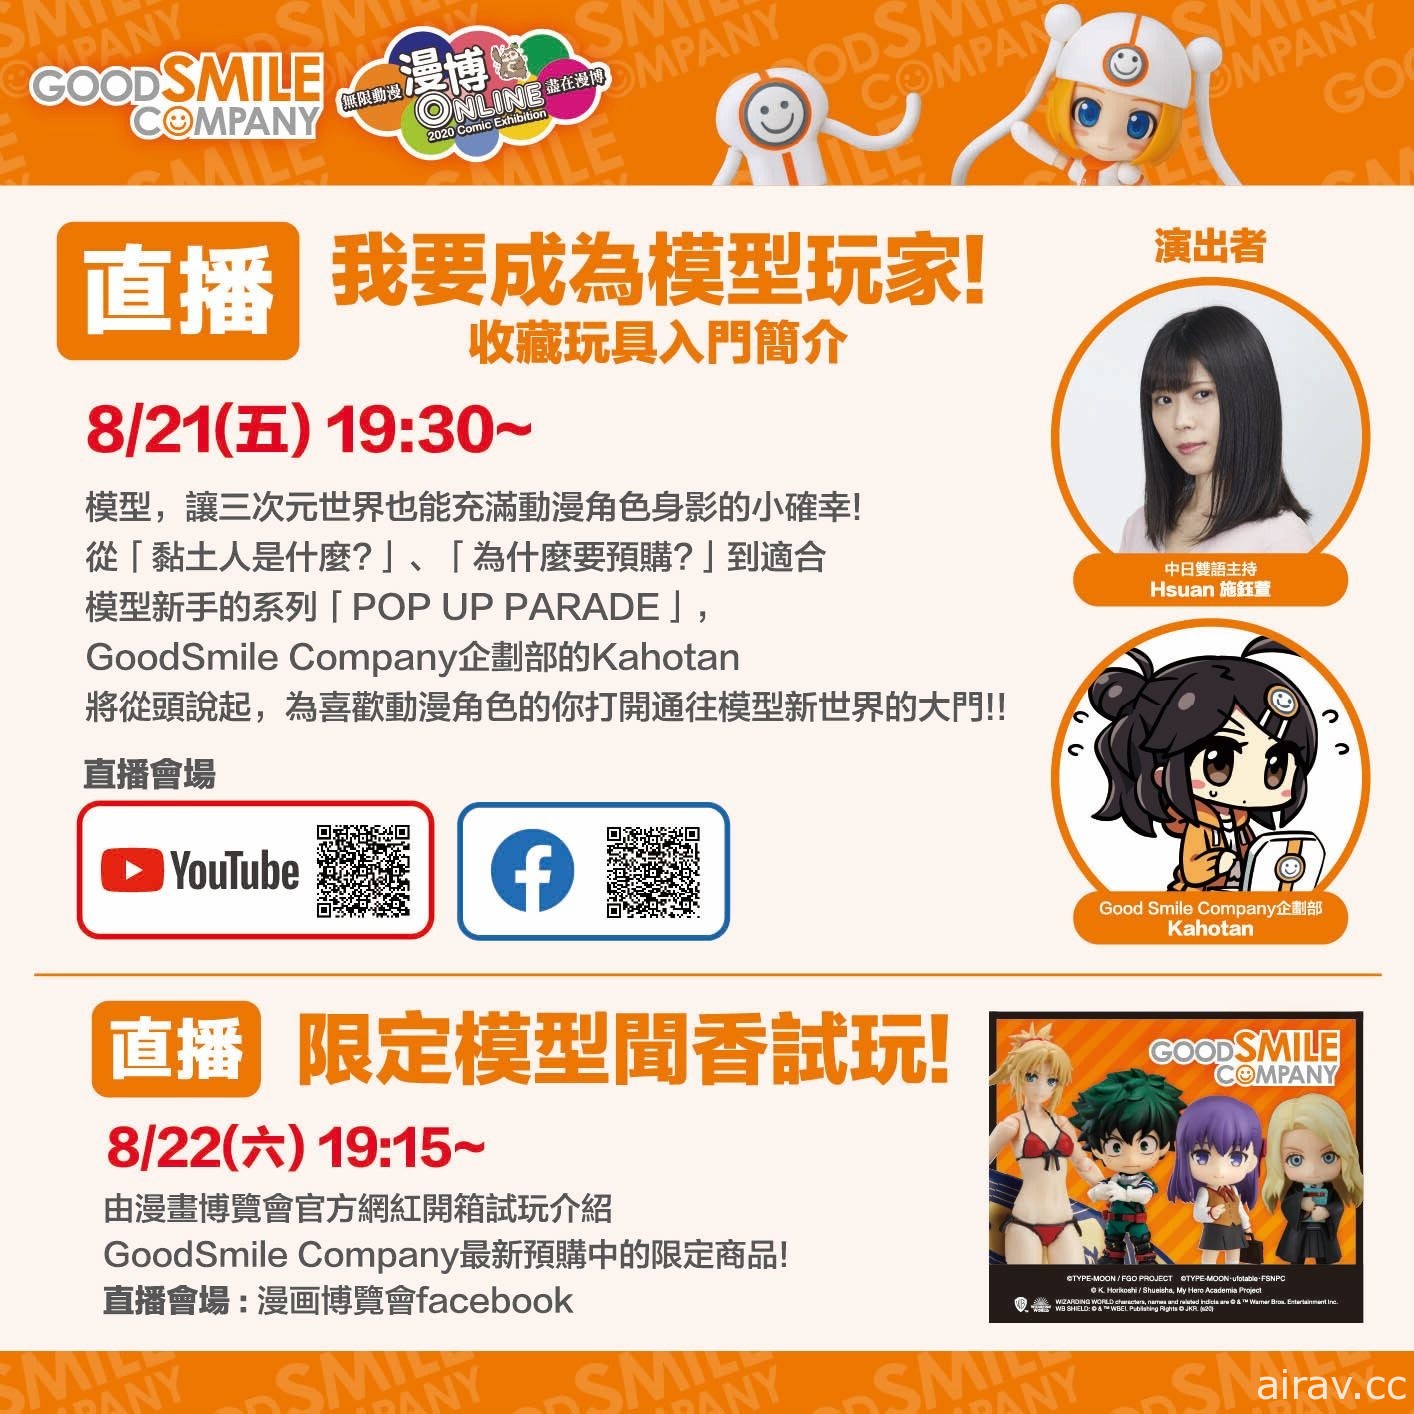 【漫博 20】Good Smile Company 發布本次活動直播節目、限定商品與福袋情報